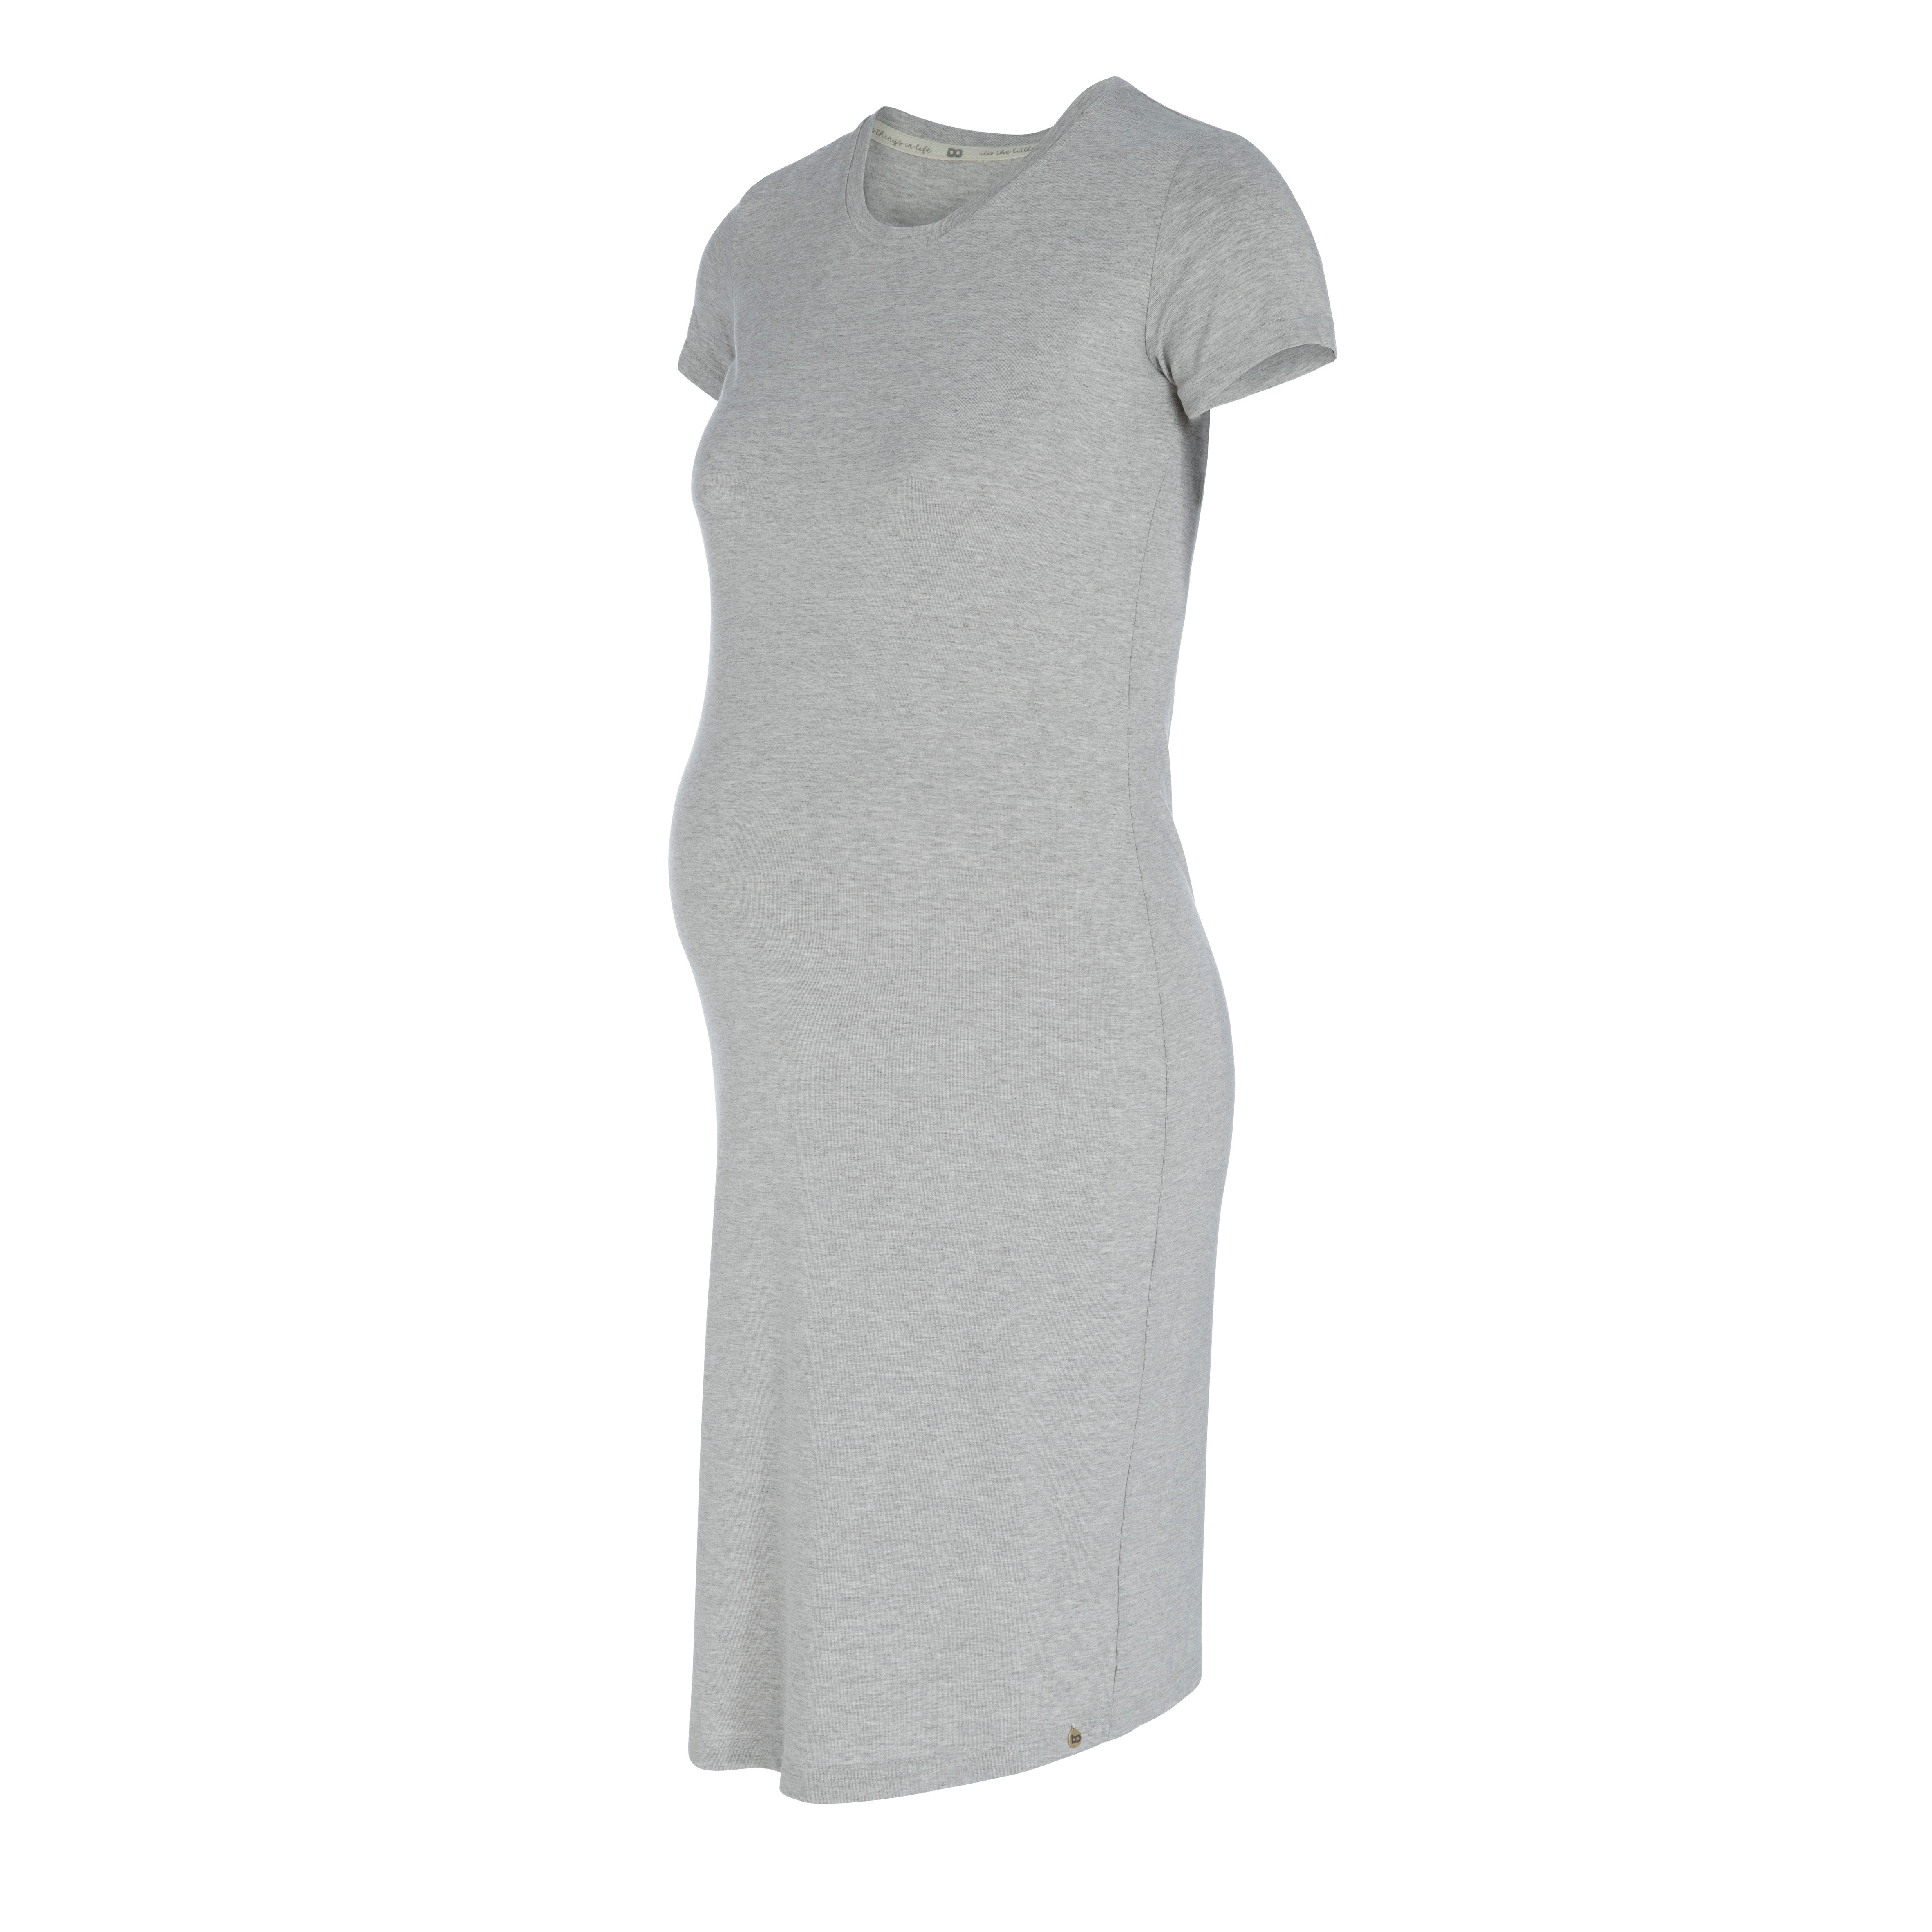 Maternity dress Glow dusty grey - M